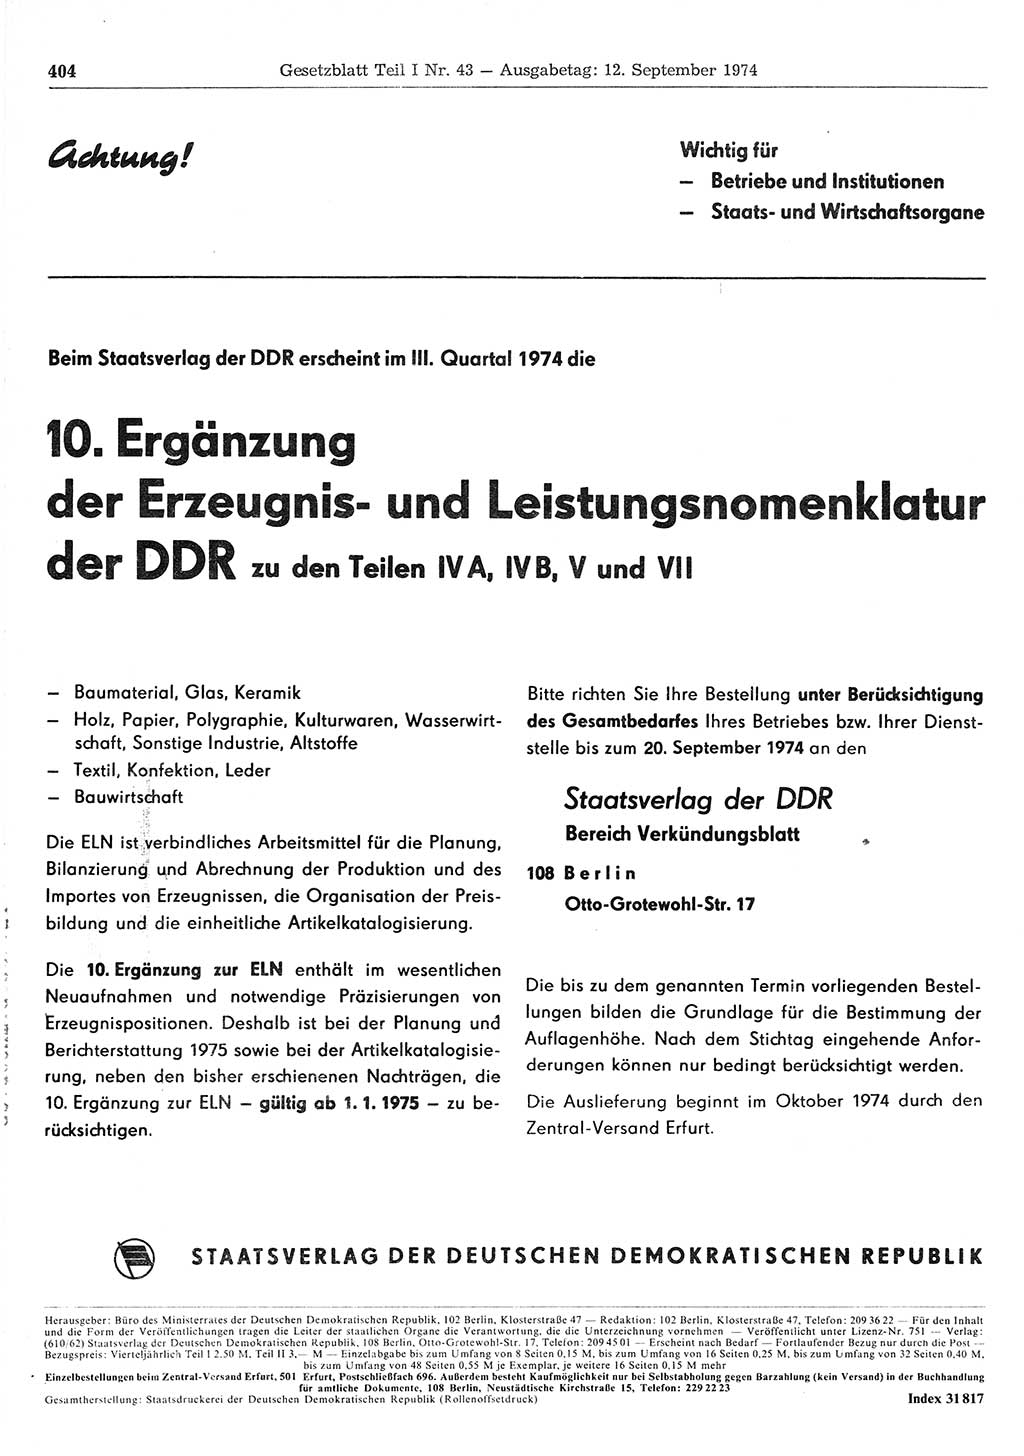 Gesetzblatt (GBl.) der Deutschen Demokratischen Republik (DDR) Teil Ⅰ 1974, Seite 404 (GBl. DDR Ⅰ 1974, S. 404)